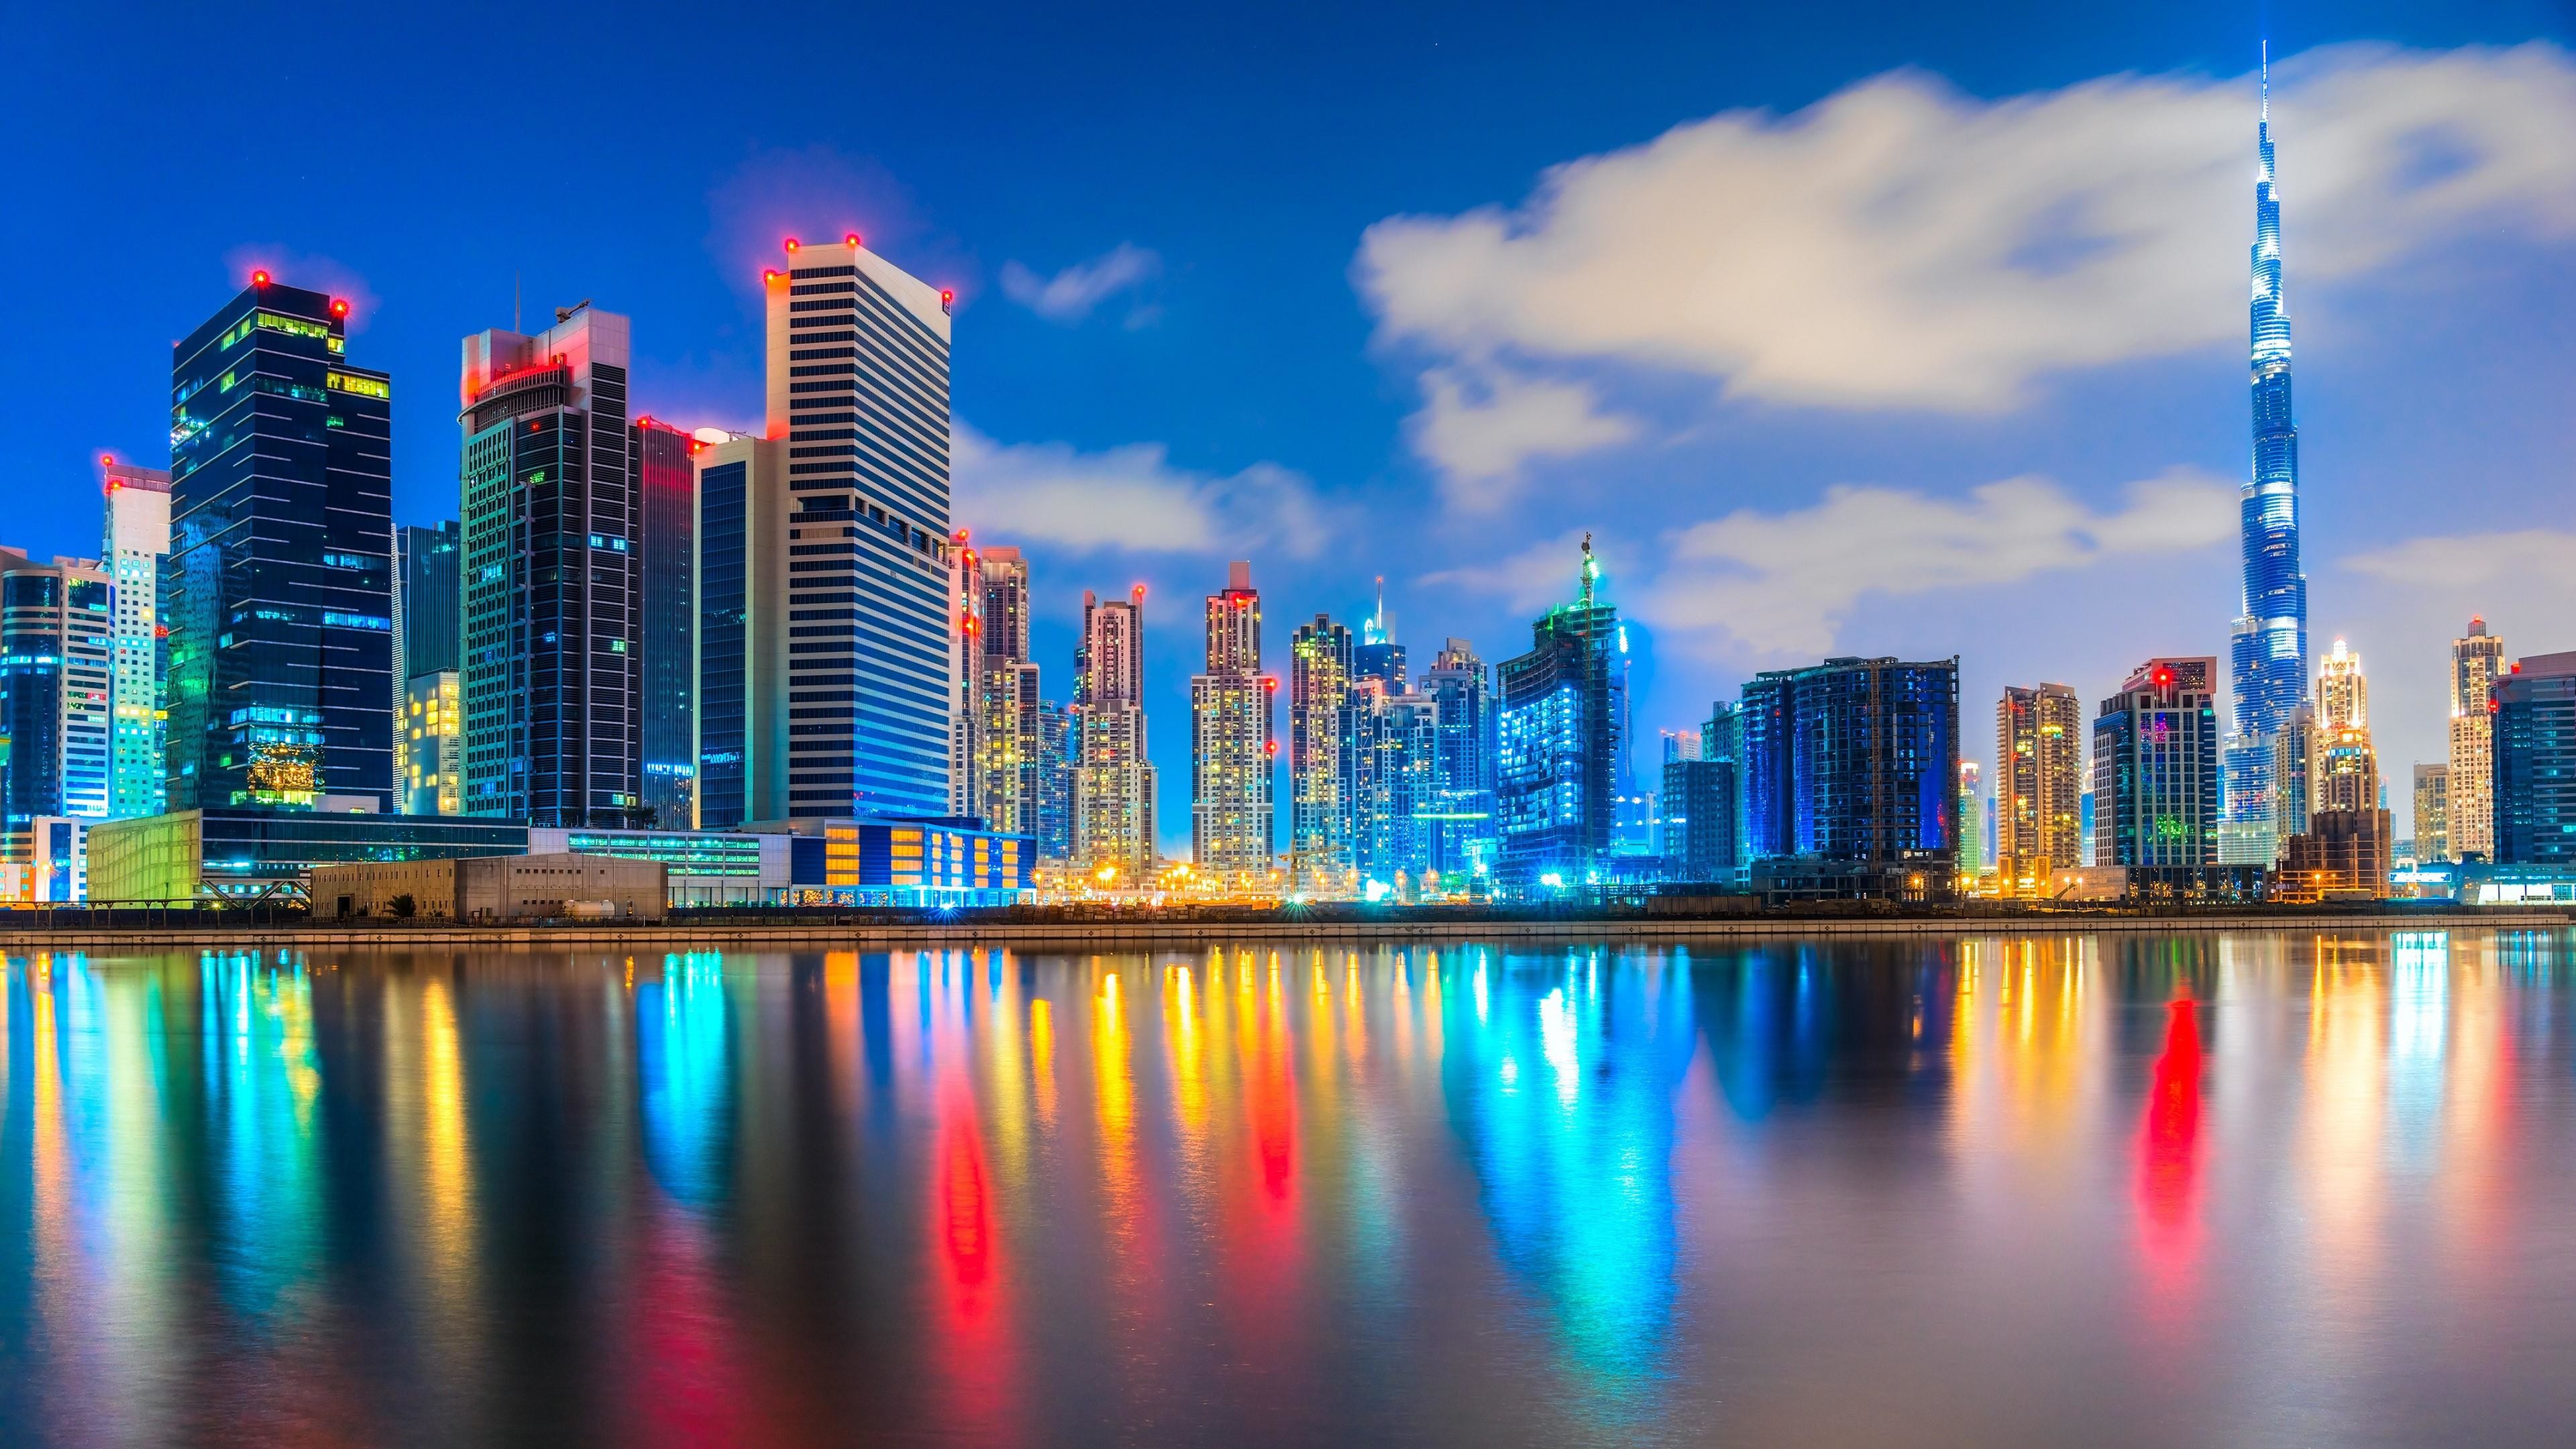 Dubai Best , HD Wallpaper & Backgrounds